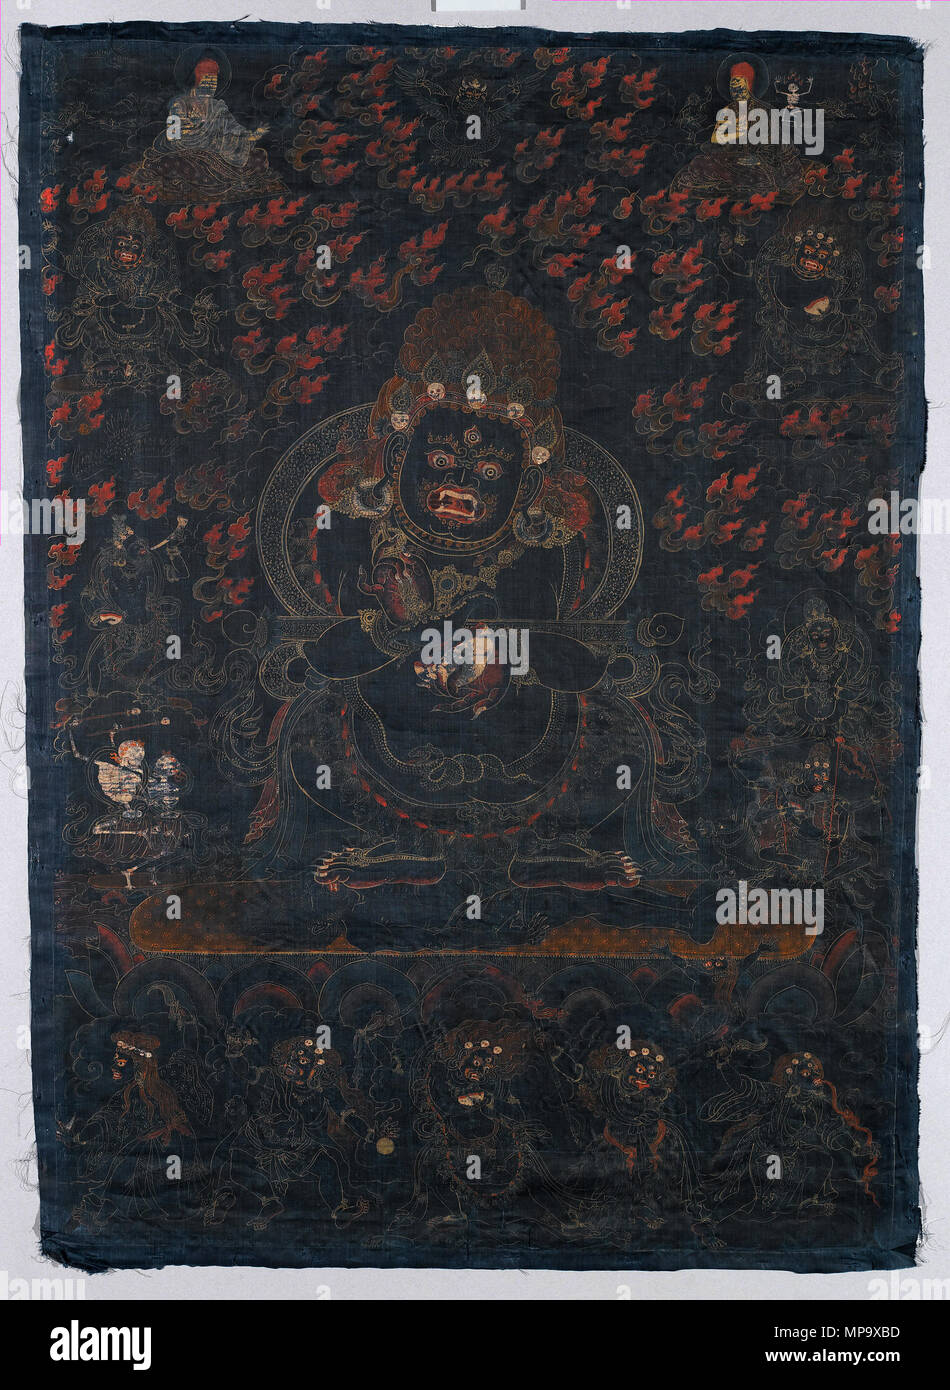 . Inglese: Mahakala, protettore della tenda, il Tibet. Il cimurro e oro su seta blu, Immagine: 29 x 20 1/2 in. (73,7 x 52,1 cm) complessivo: 30 1/4 x 21 3/4 in. (76,8 x 55,2 cm). Questo nero dipinto di massa è una visualizzazione immagine di Mahakala come Panjarantha, gli illuminati protettore del buddhismo. Egli calpesta un cadavere maschile sotto i suoi piedi e visualizza un coltello scotennatrice (kartrika) nella mano destra e una coppa del cranio (kapala) nella sua sinistra, attrezzi per il taglio attraverso delusioni e ignoranza. Un rituale wand (gandi) è bilanciata in uncini delle sue braccia. Panjaranatha è inteso come la "originale" Mahakala Foto Stock